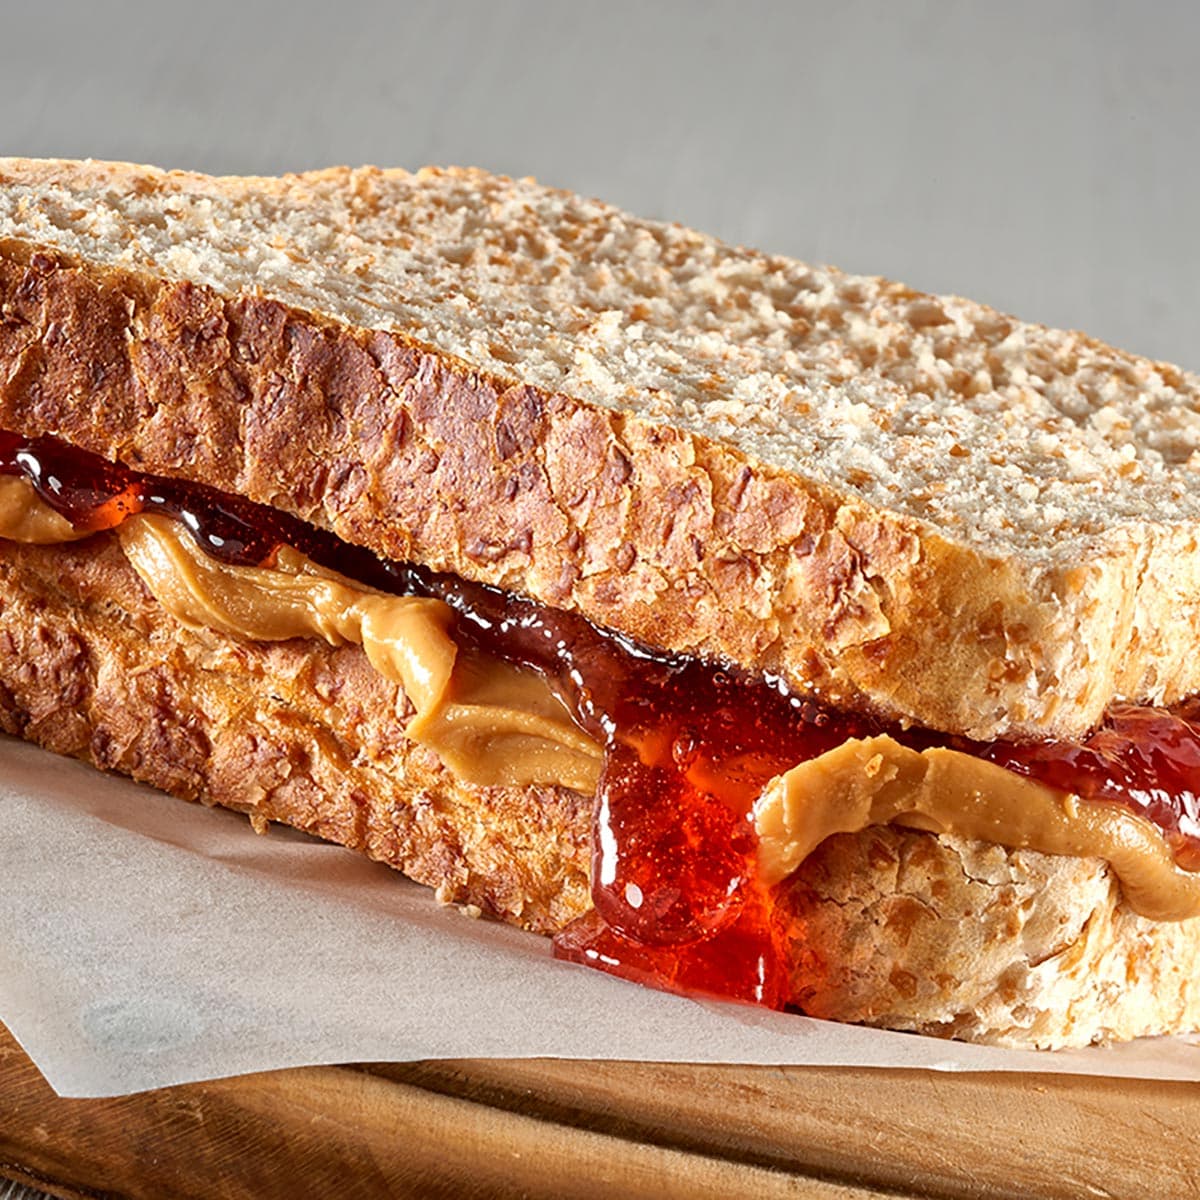 Peanut Butter and Jam Sandwich